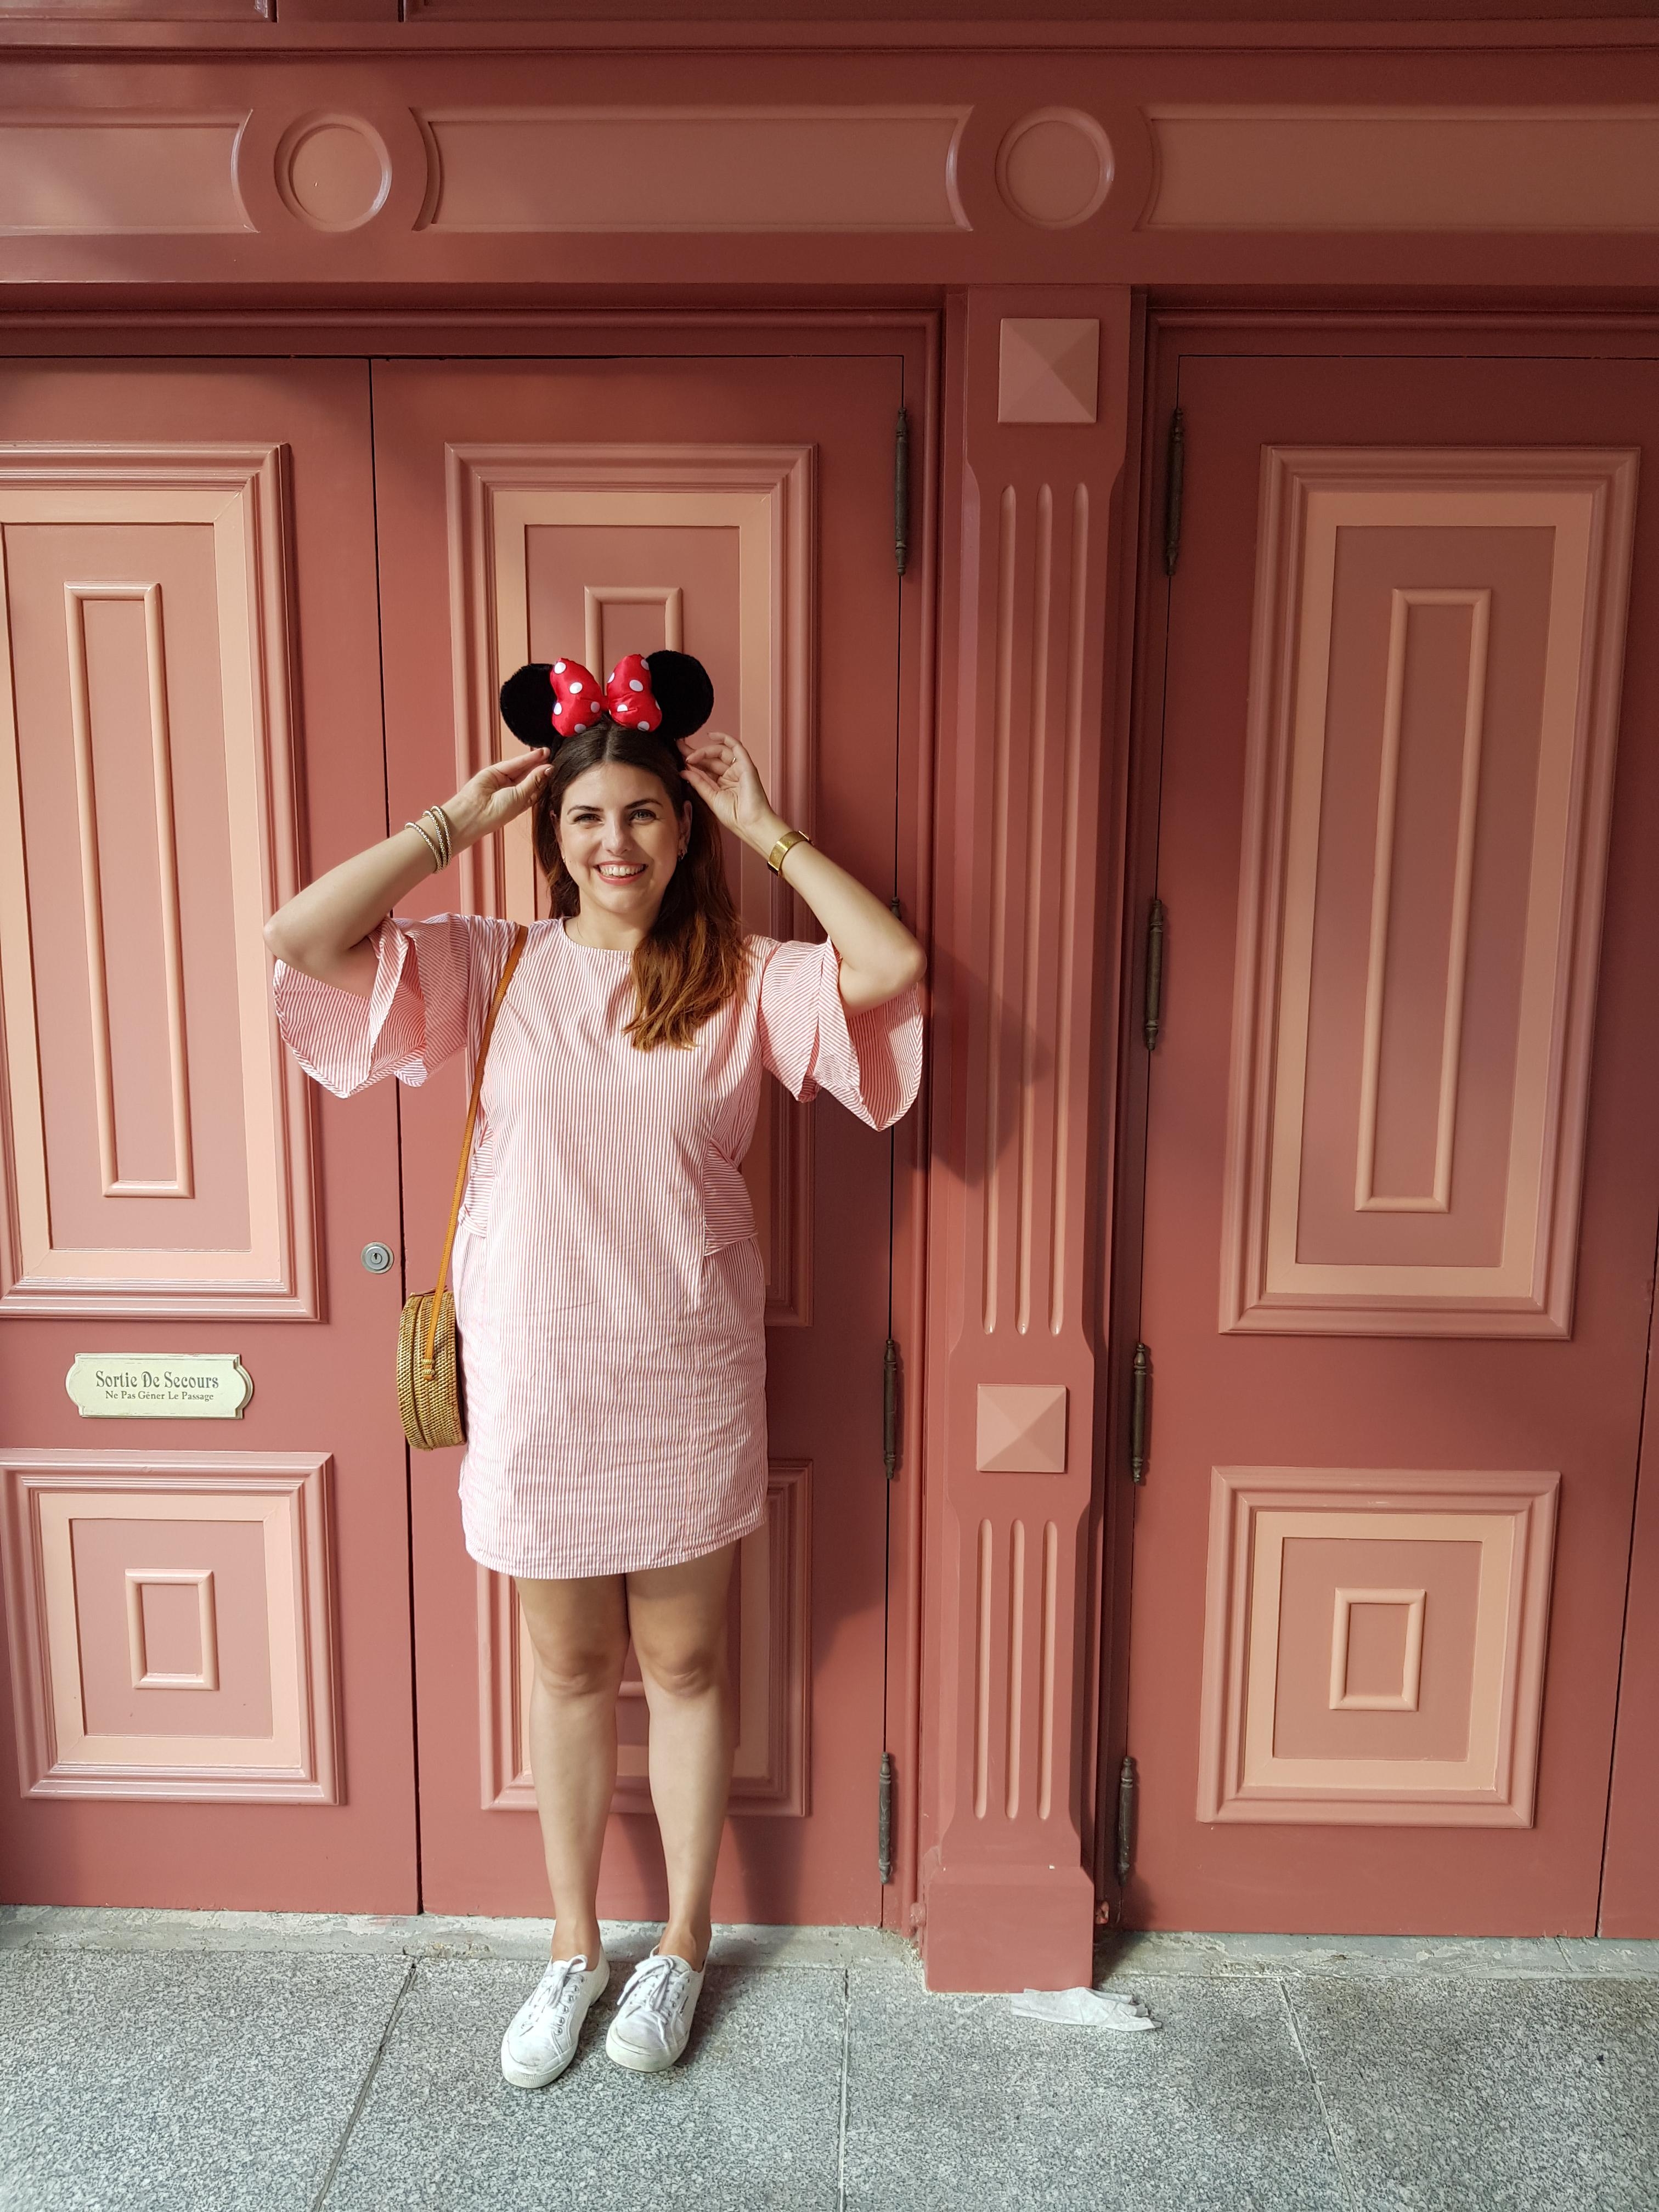 Heute mal ein Outfit-Post, weil ich meinen Minnie-Mouse-Style vom Disneyland Paris so gerne mag. 🎀 #ootd #dress